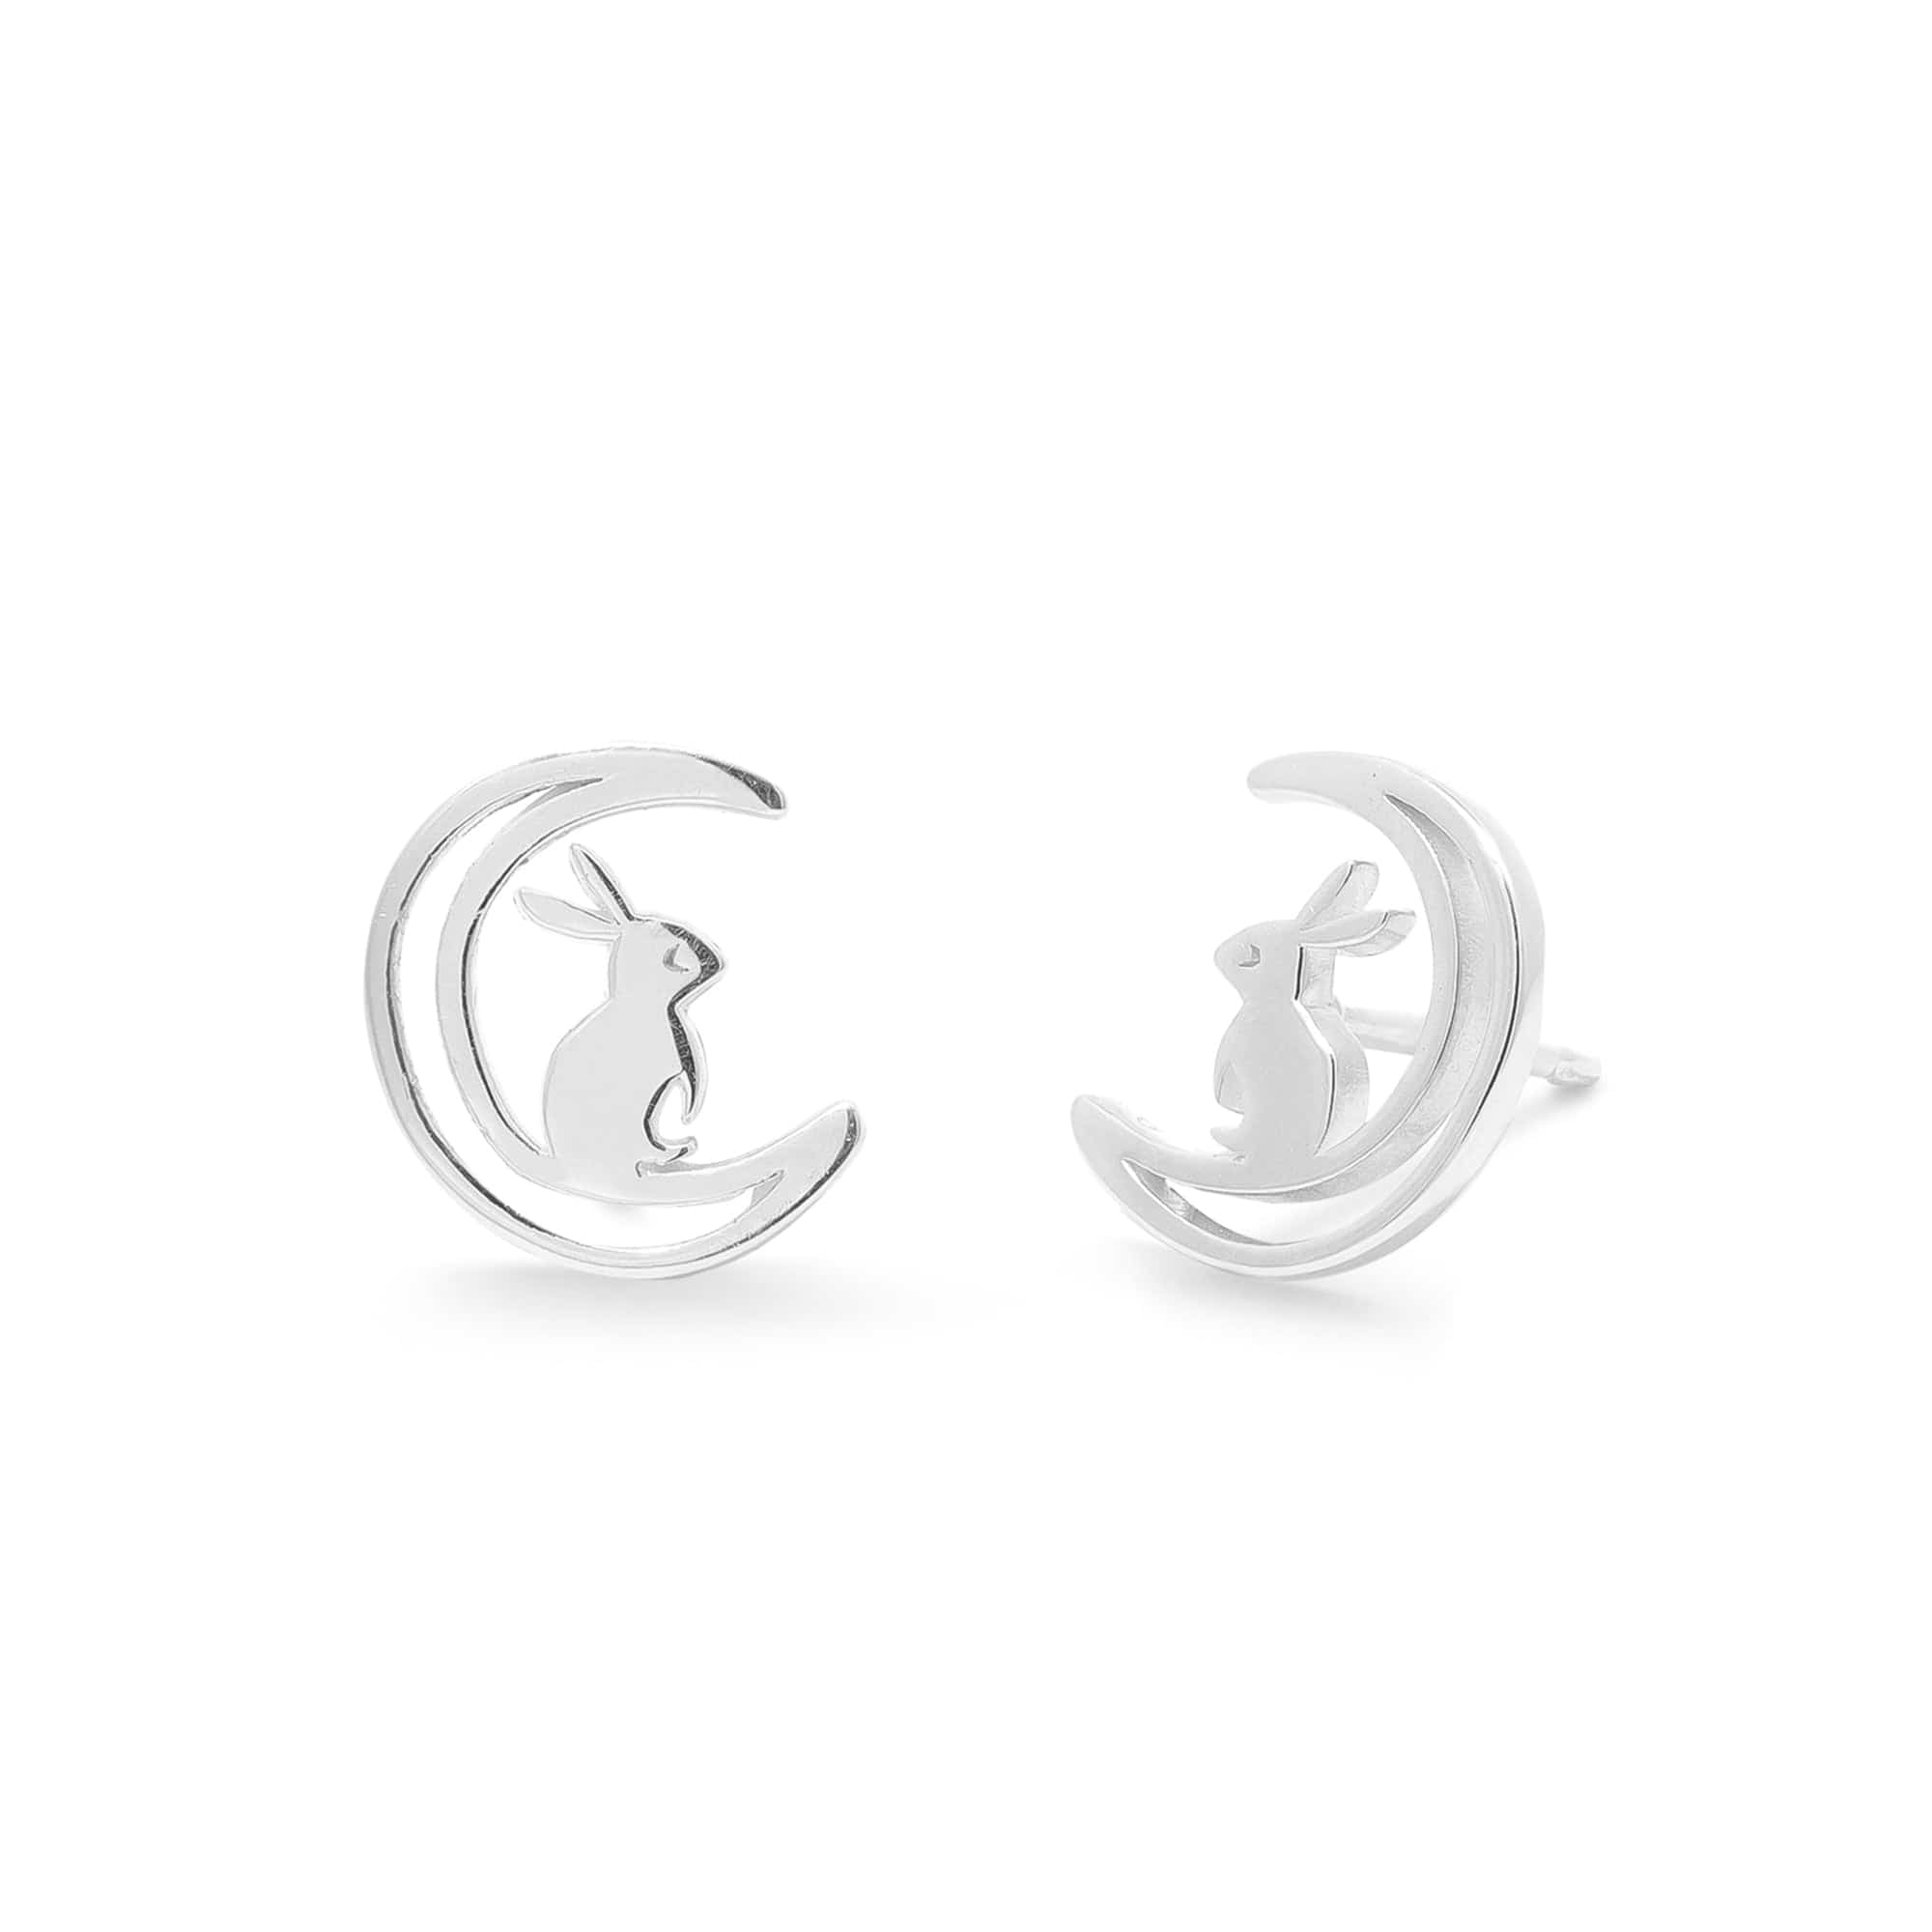 Boma Jewelry Earrings Moon Bunny Stud Earrings